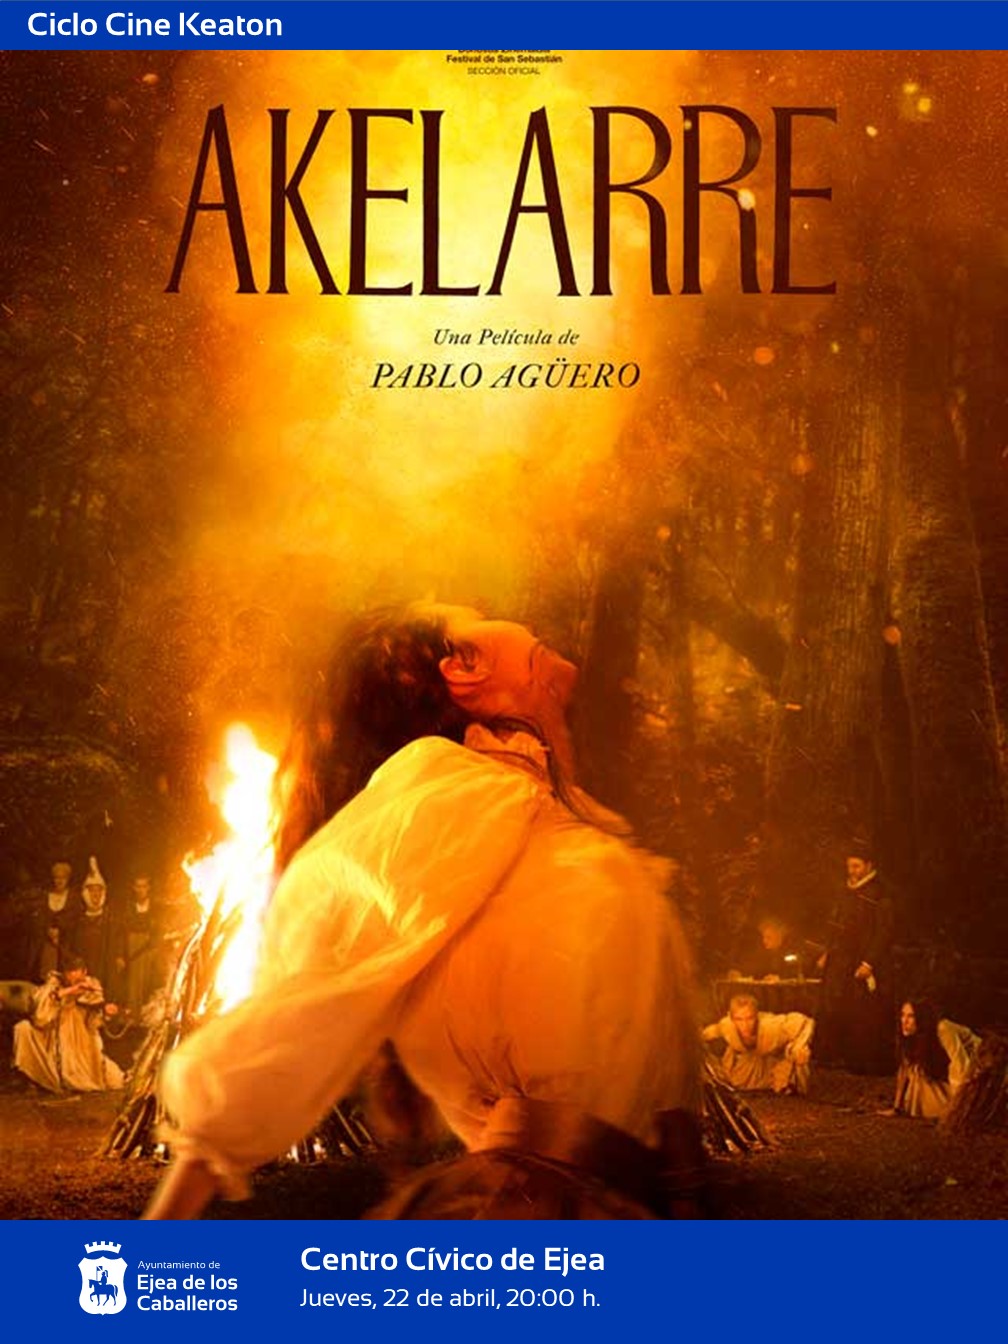 En este momento estás viendo Comienza el Cine Keaton 2021: El ciclo “Akelarre”, la película más galardonada de los premios Goya